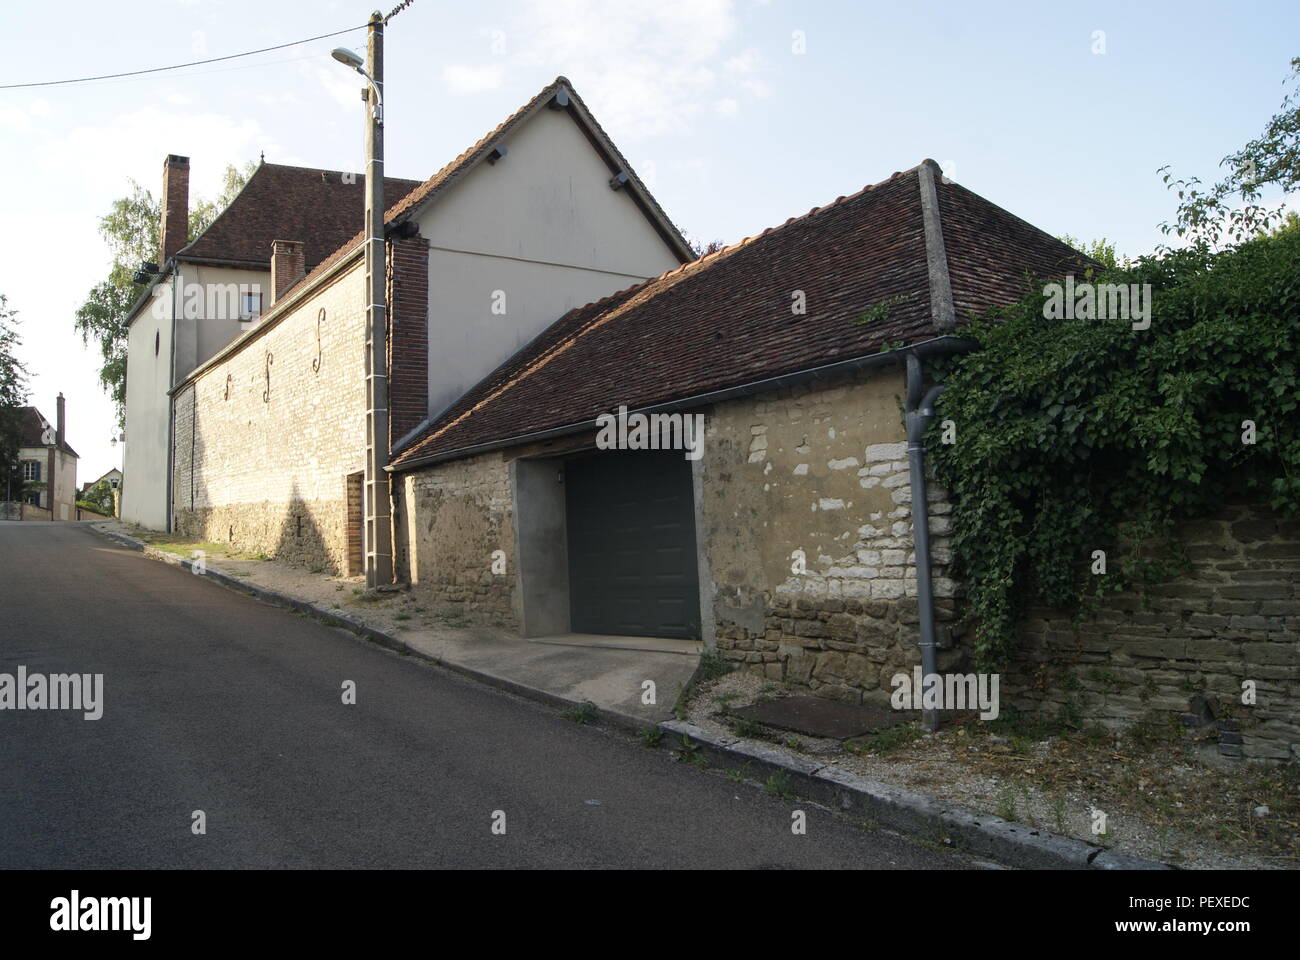 Village de France Stock Photo